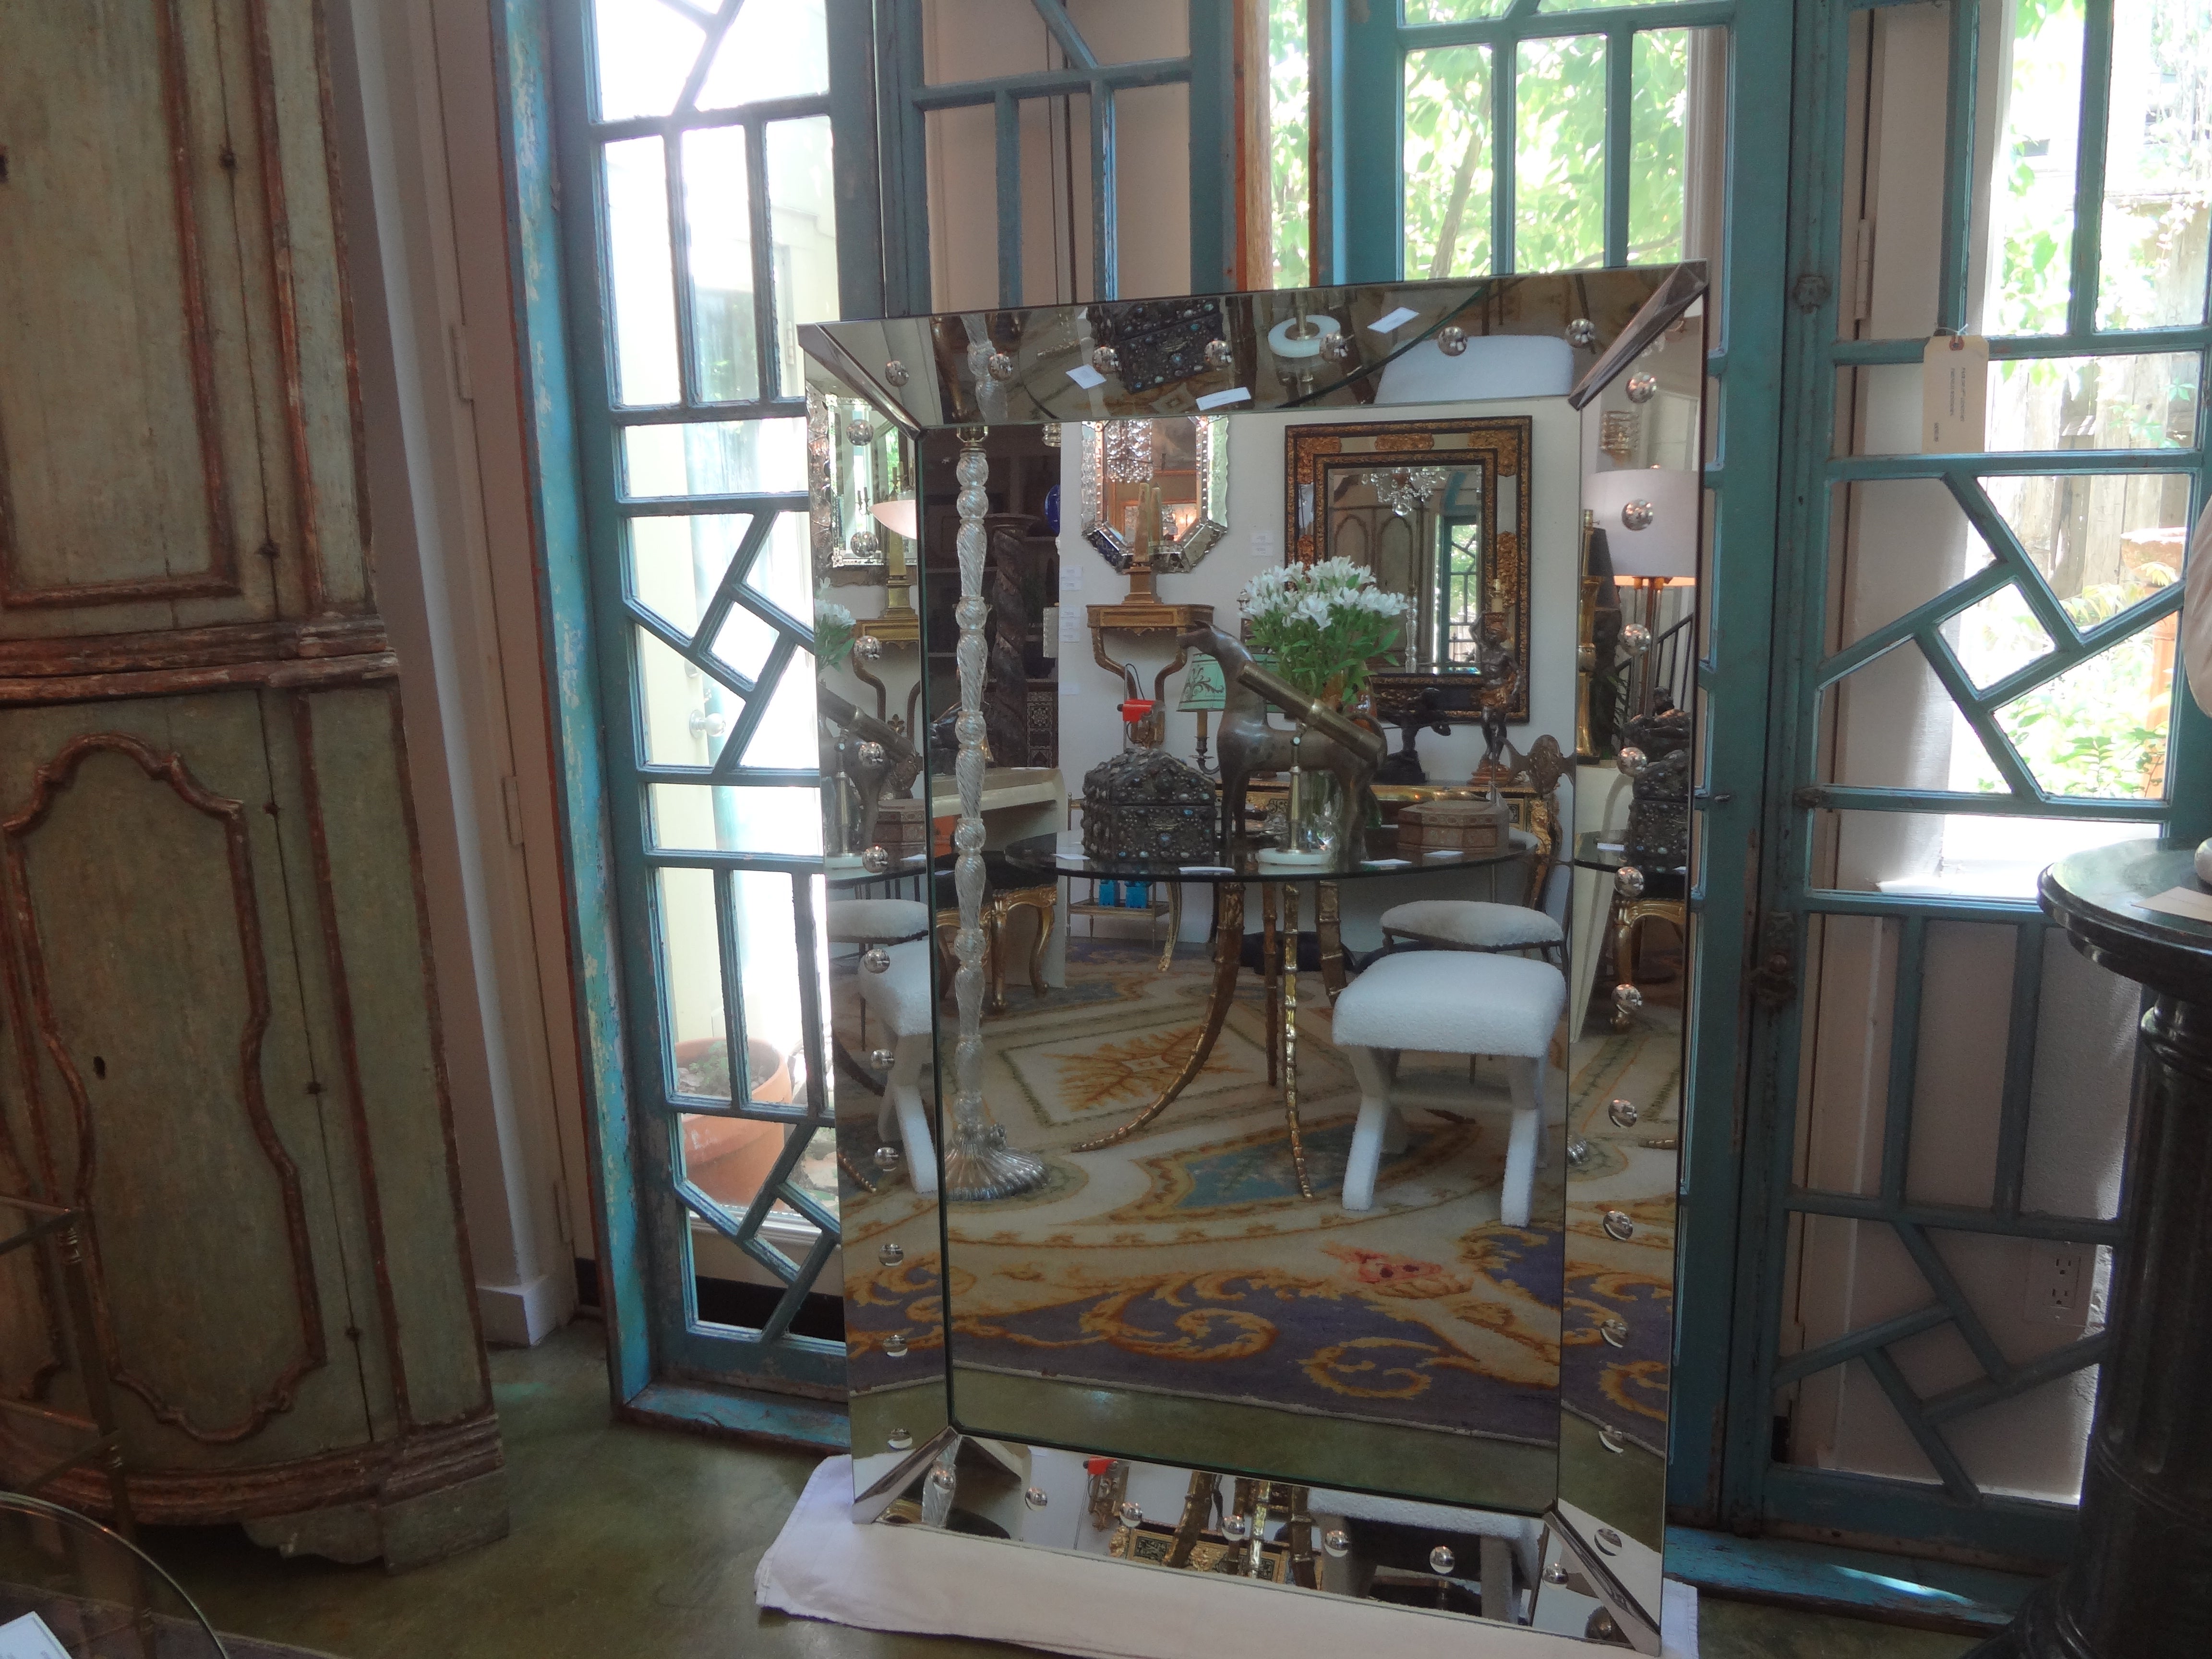 Großer Art Deco geätzter Bullseye Spiegel im venezianischen Stil
Dieser attraktive große Spiegel im venezianischen Stil hat einen gebänderten Spiegelrahmen mit Blasenverzierung, der durch geometrische Metallplatten getrennt ist.
Unser schöner Art